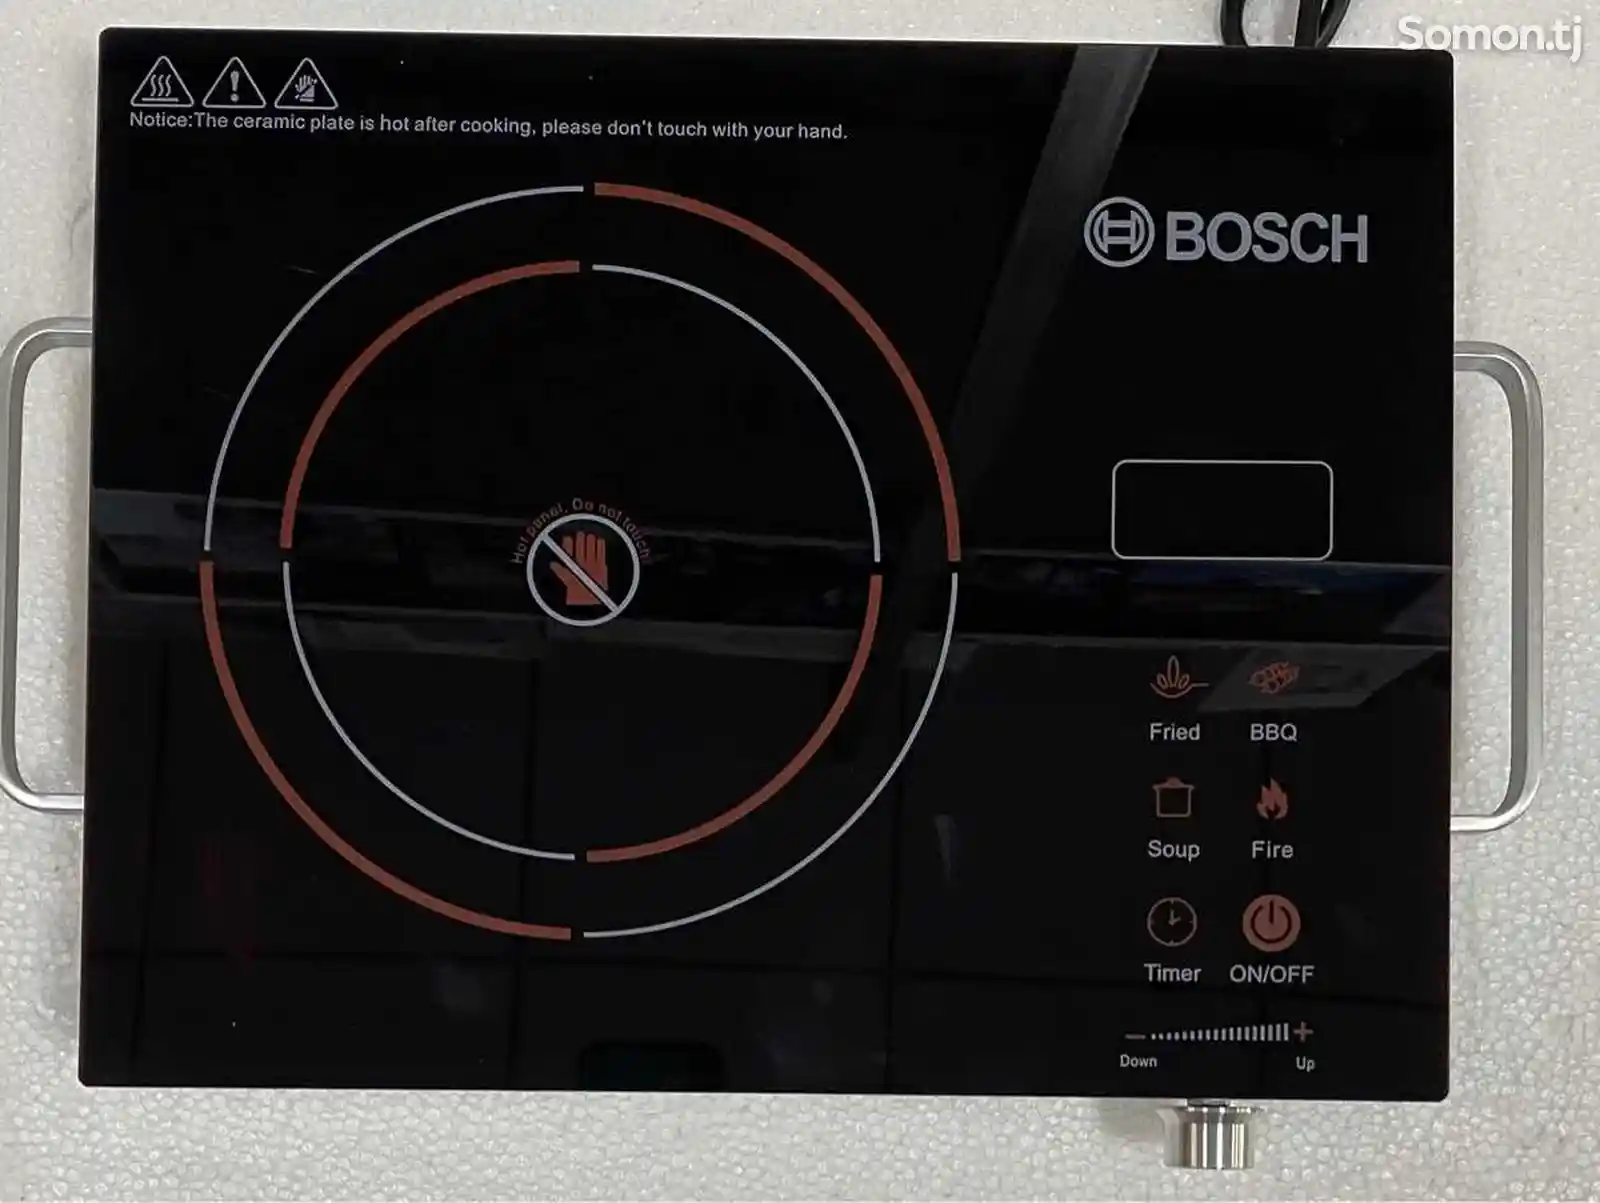 Плита Bosch 7031-2